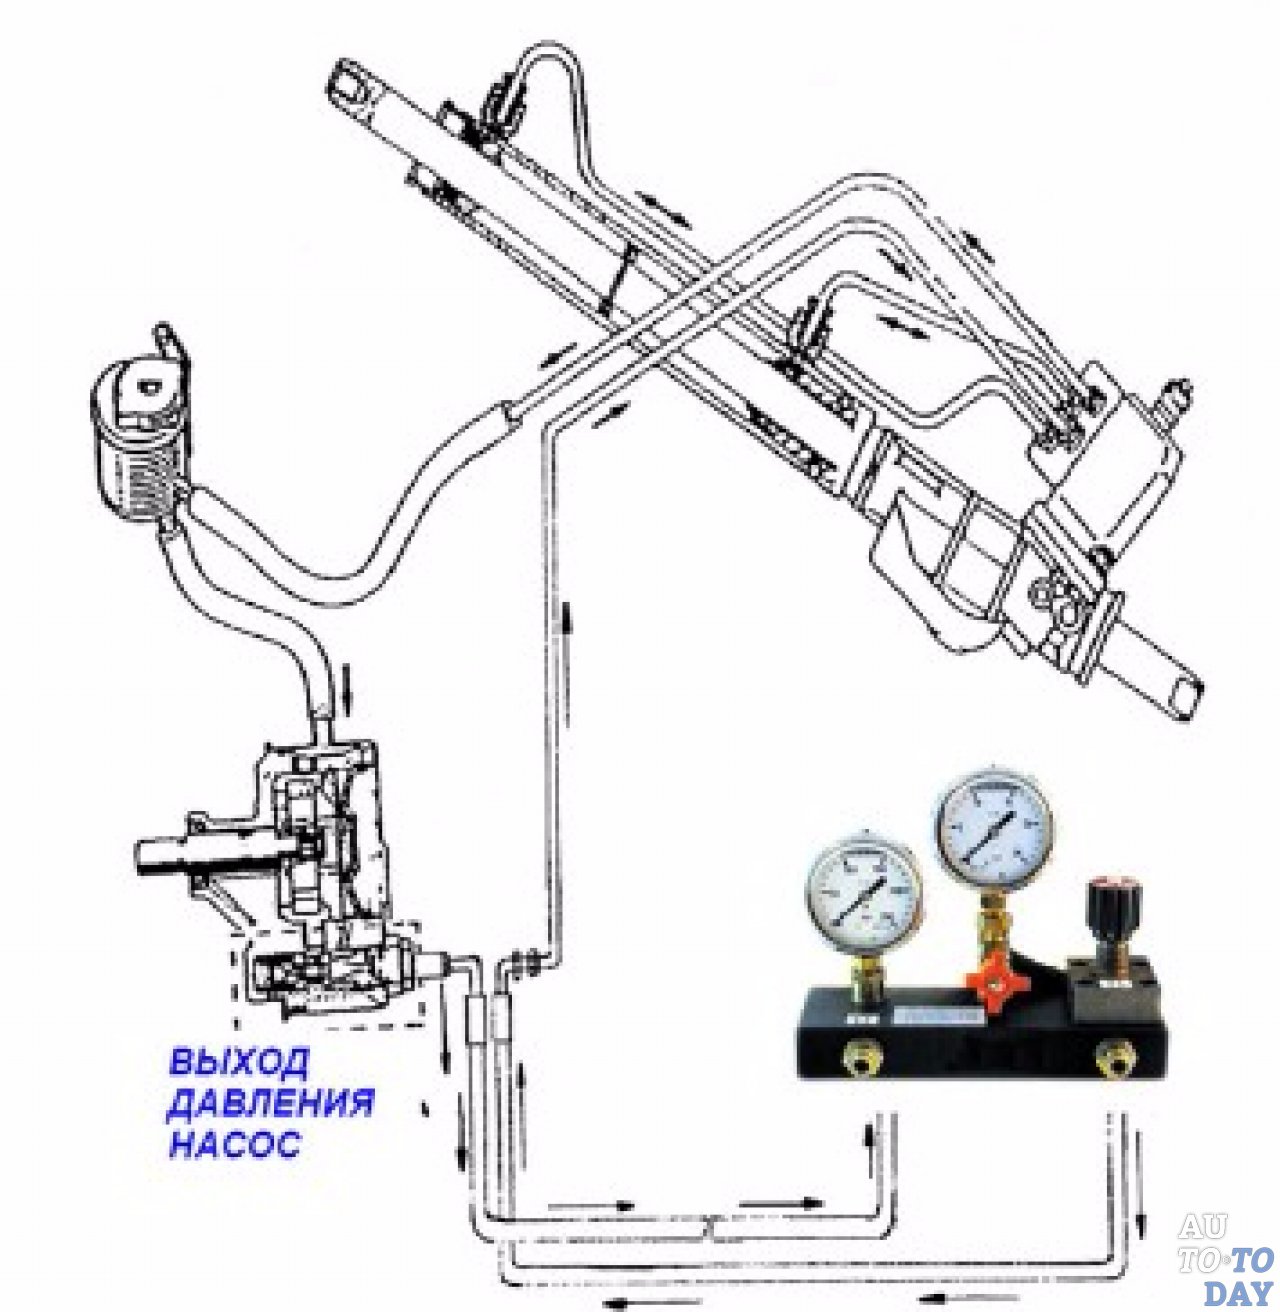 На холодную гудит гидроусилитель руля: причины и ремонт гидроусилителя рулевого управления